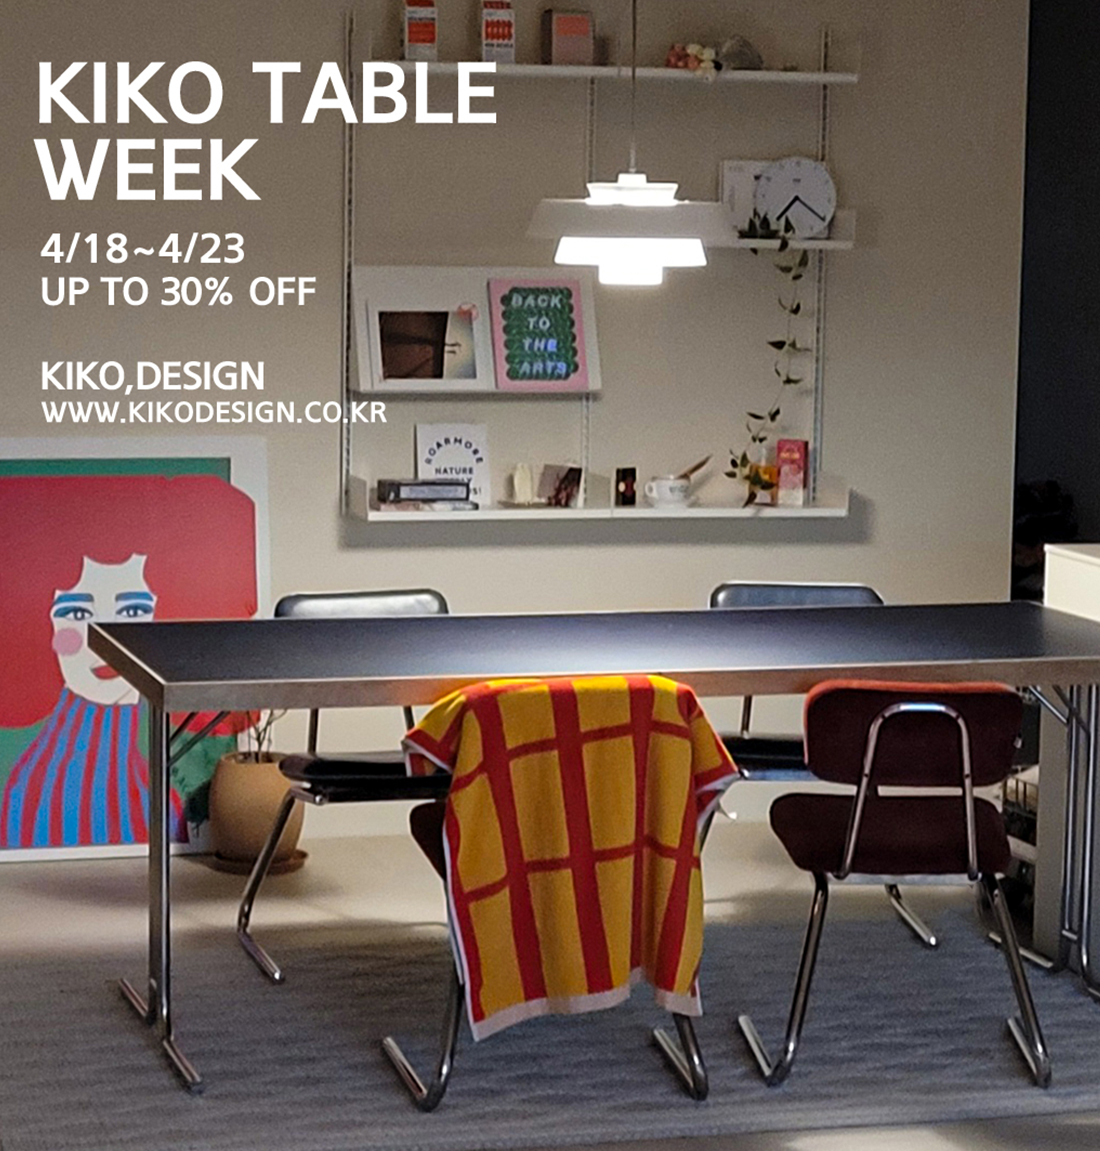 kiko,design#4